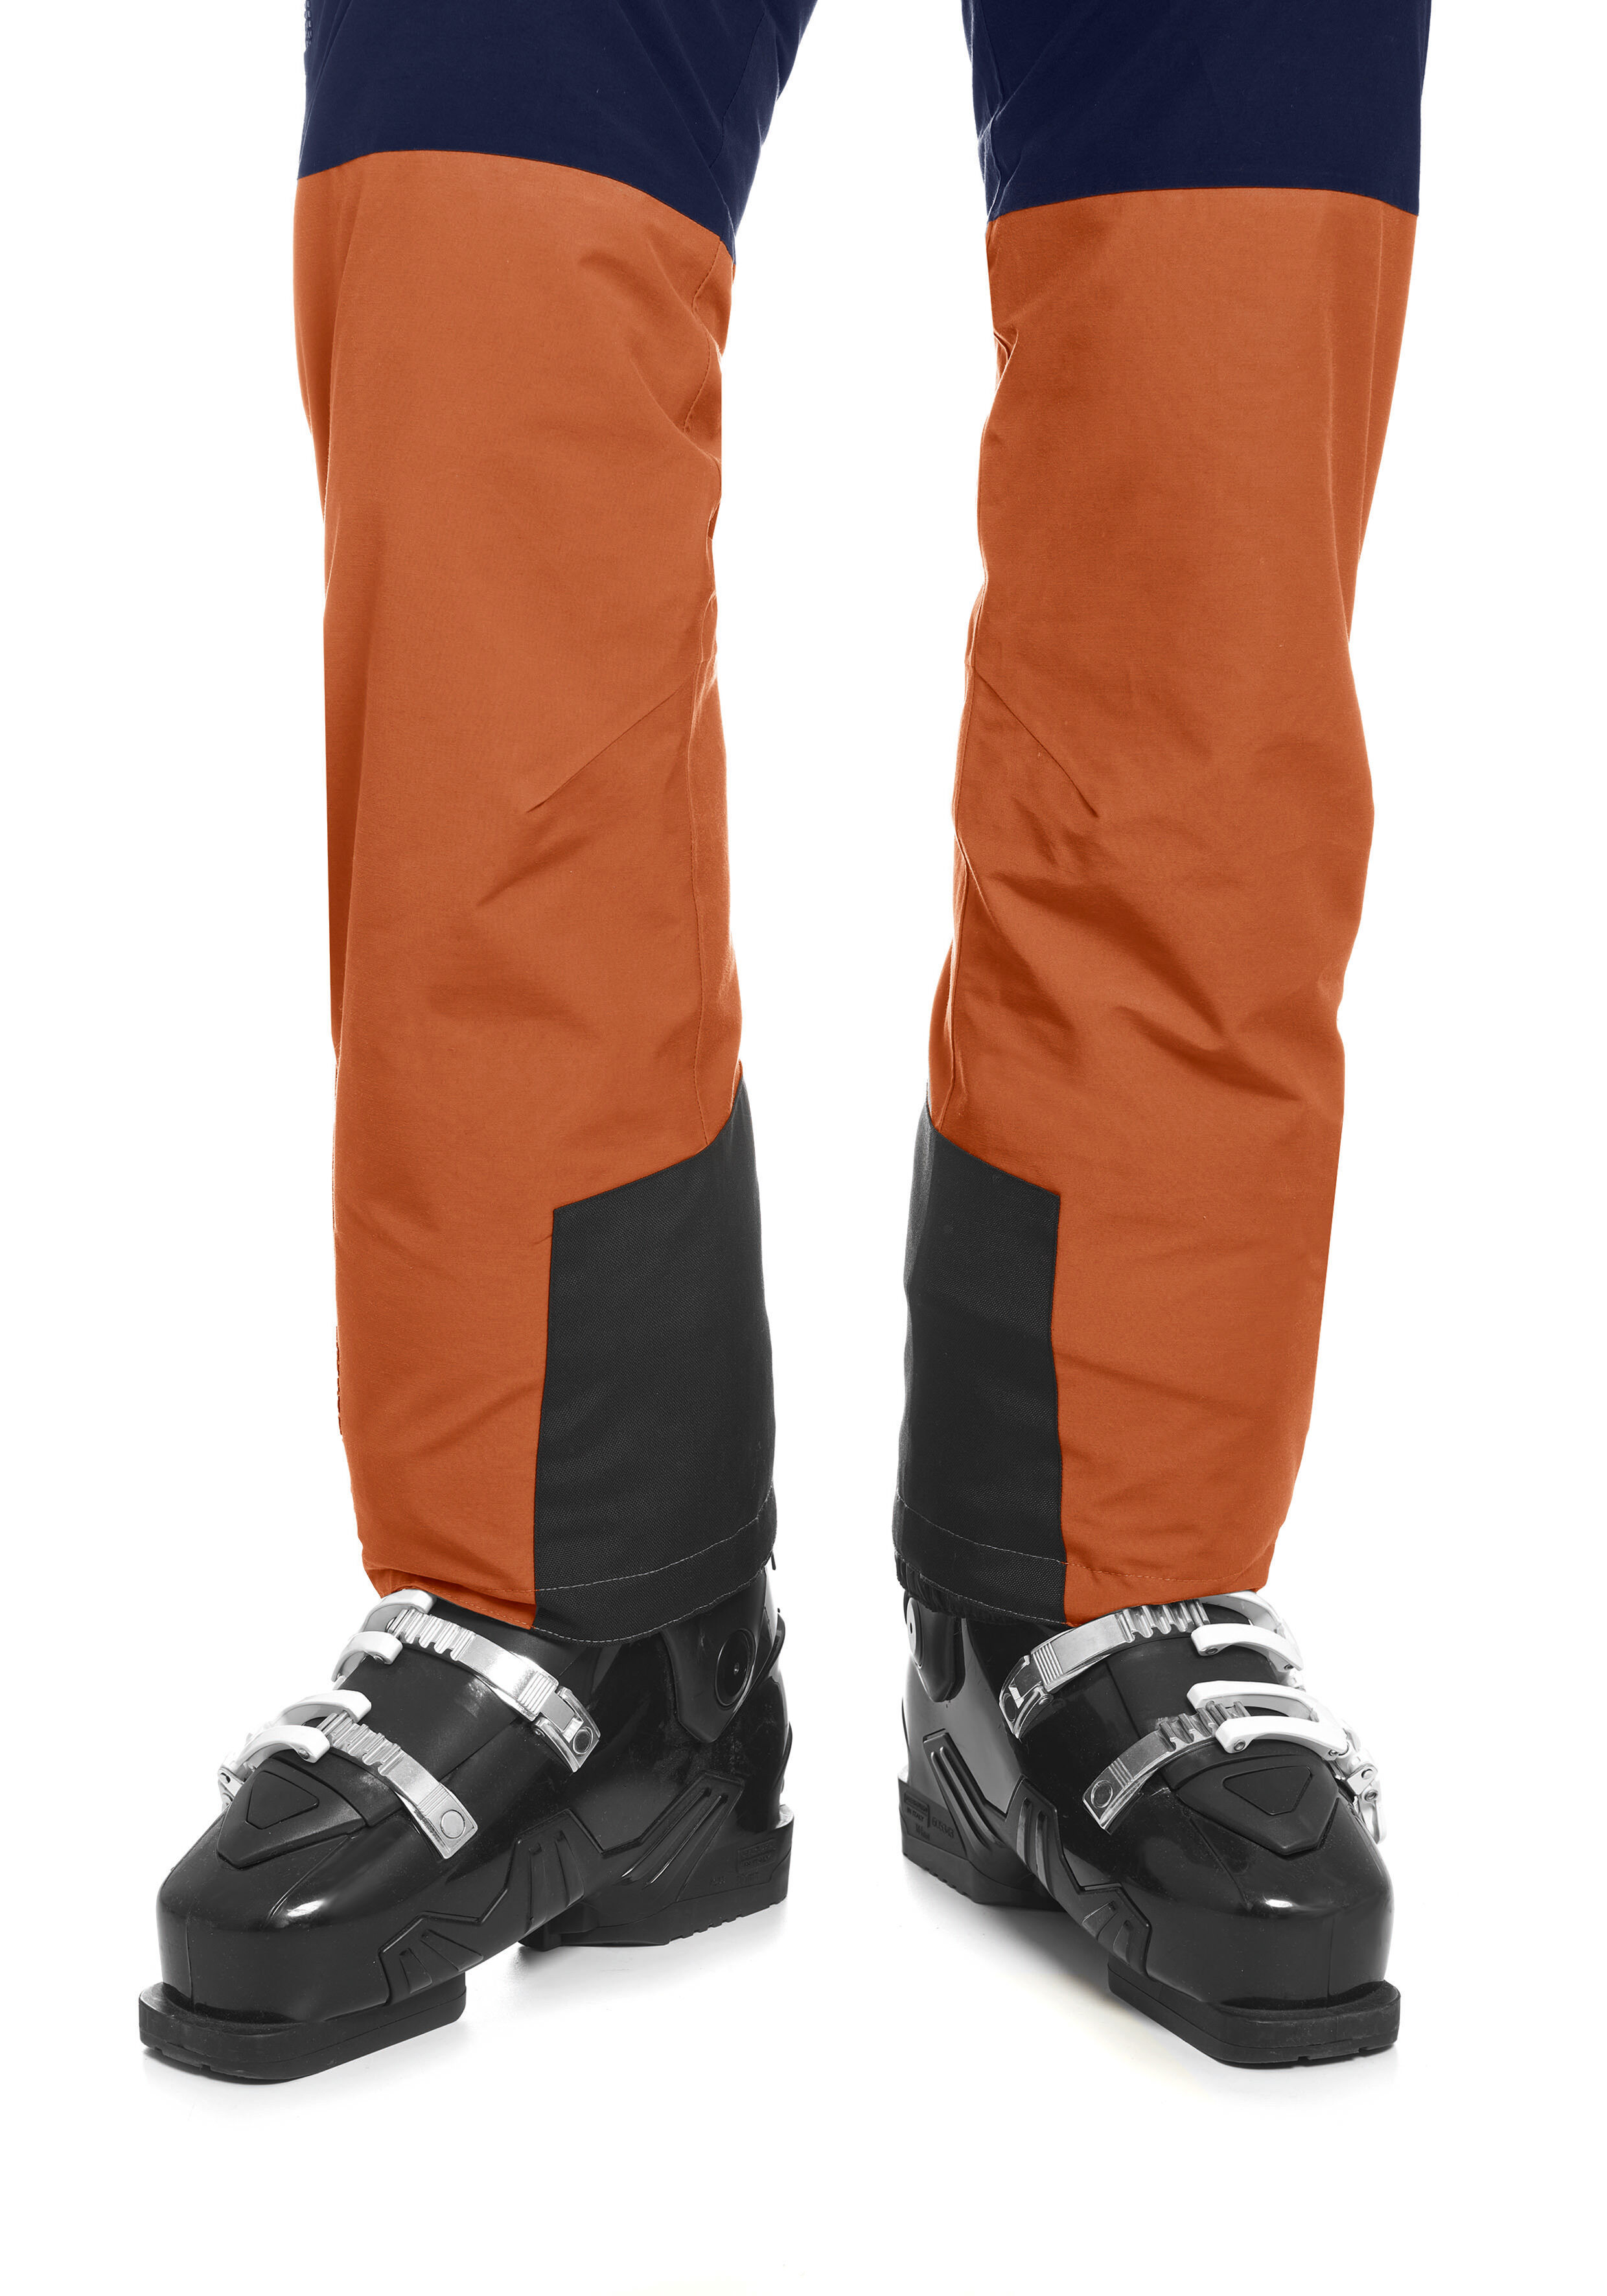 Maier Sports Skihose »Backline Pants W«, Lässig geschnittene Skihose für... grün Größe 34 36 38 40 42 44 46 48 50 52